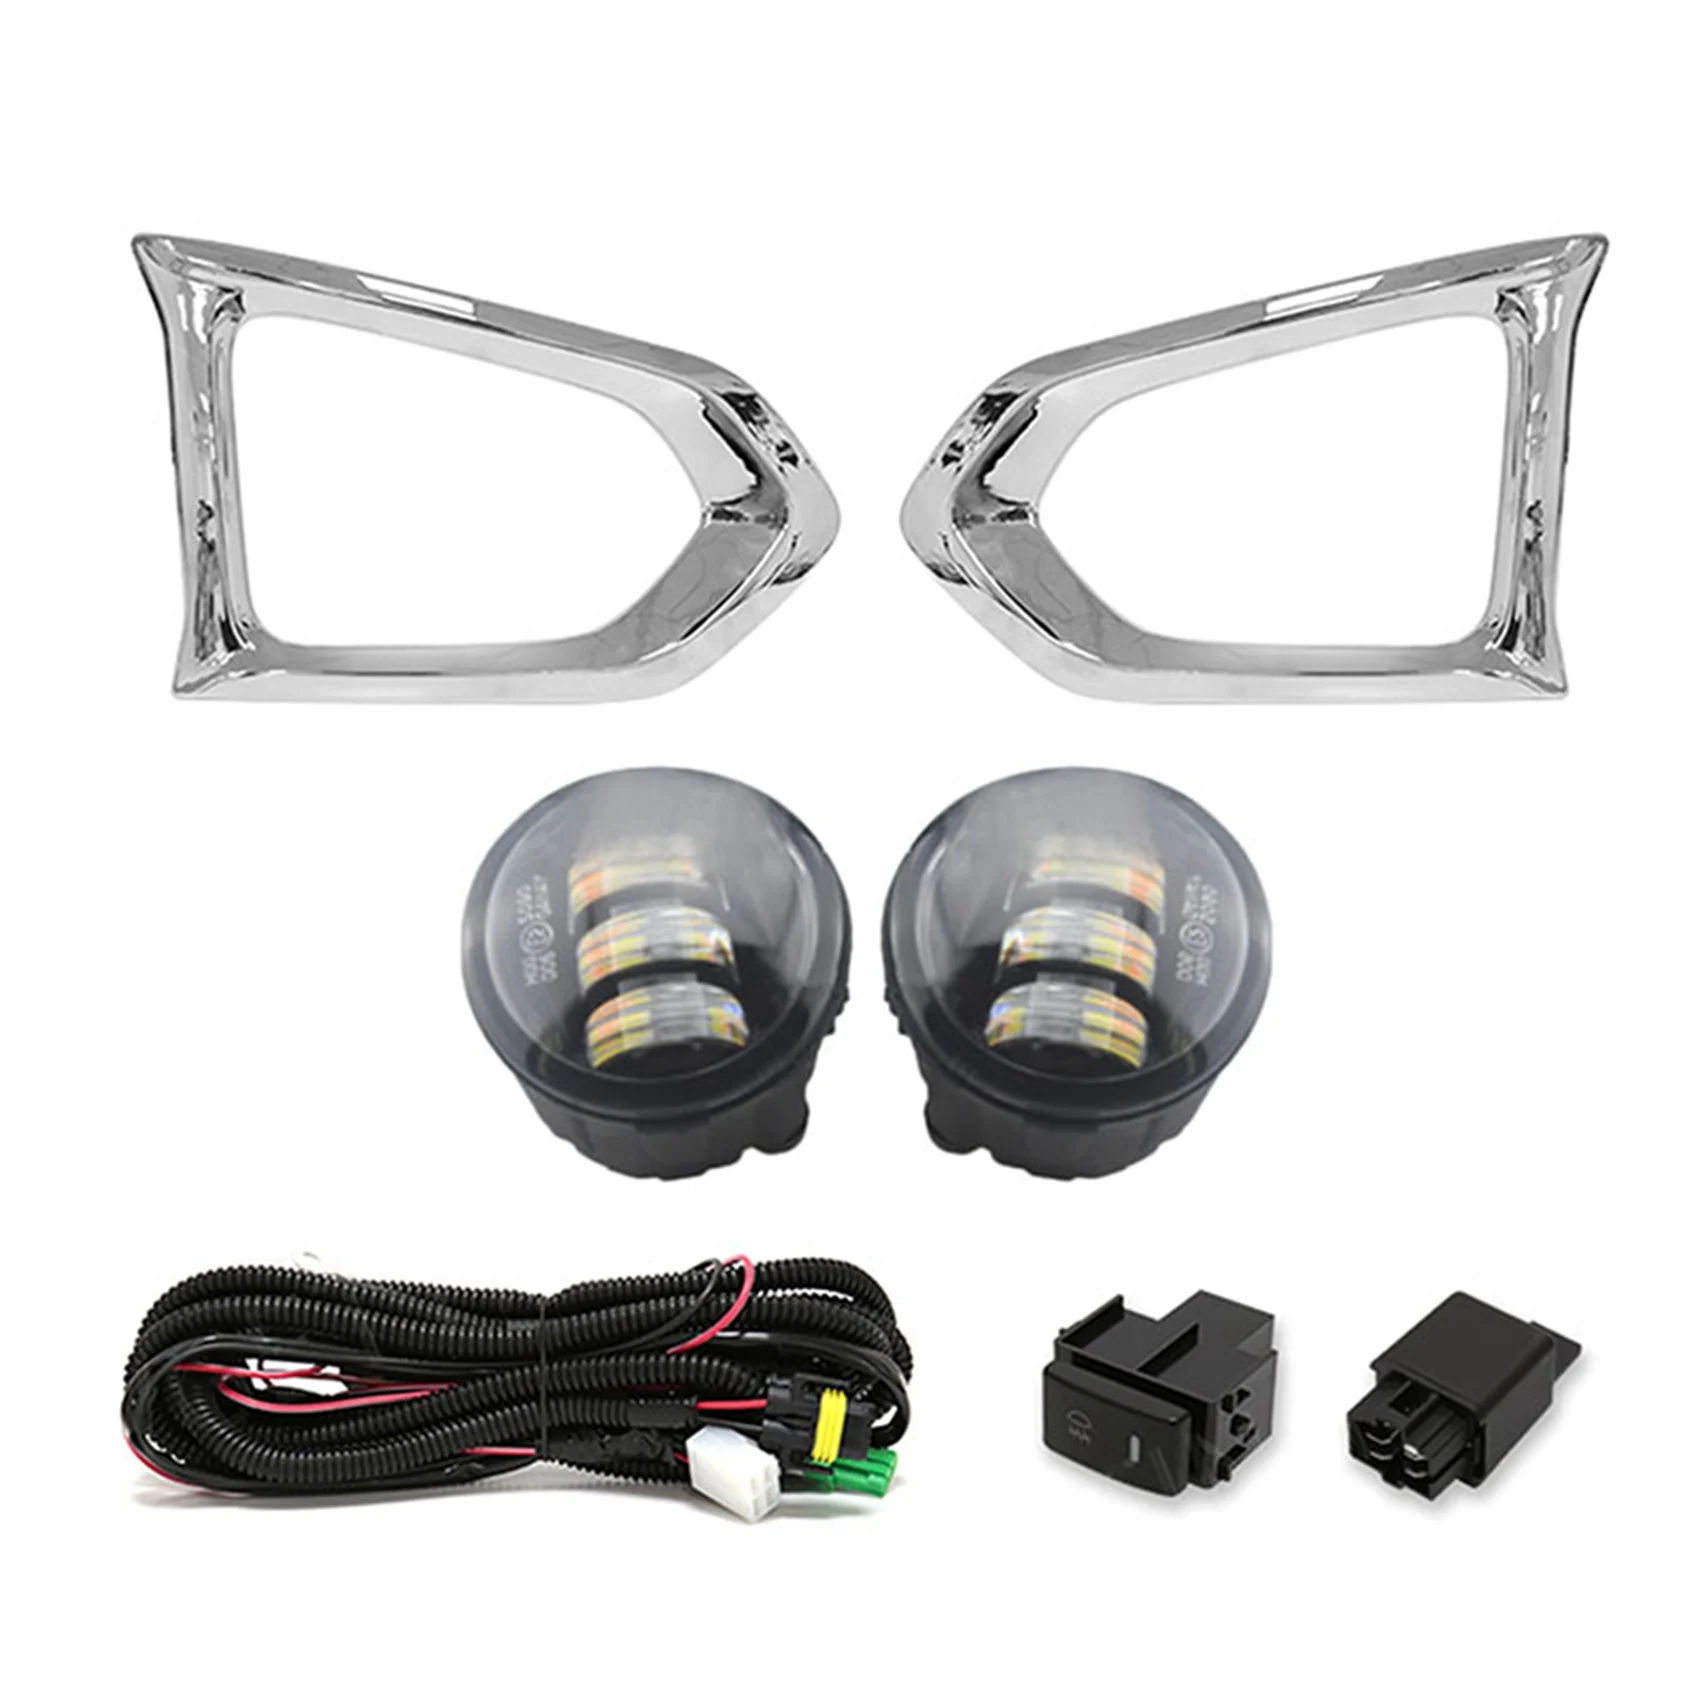 

1Set DRL Led Fog Light +Lamp Cover +Wiring+Switch Kit Bumper Daytime Running Light for Nissan Patrol 2014-2019,White